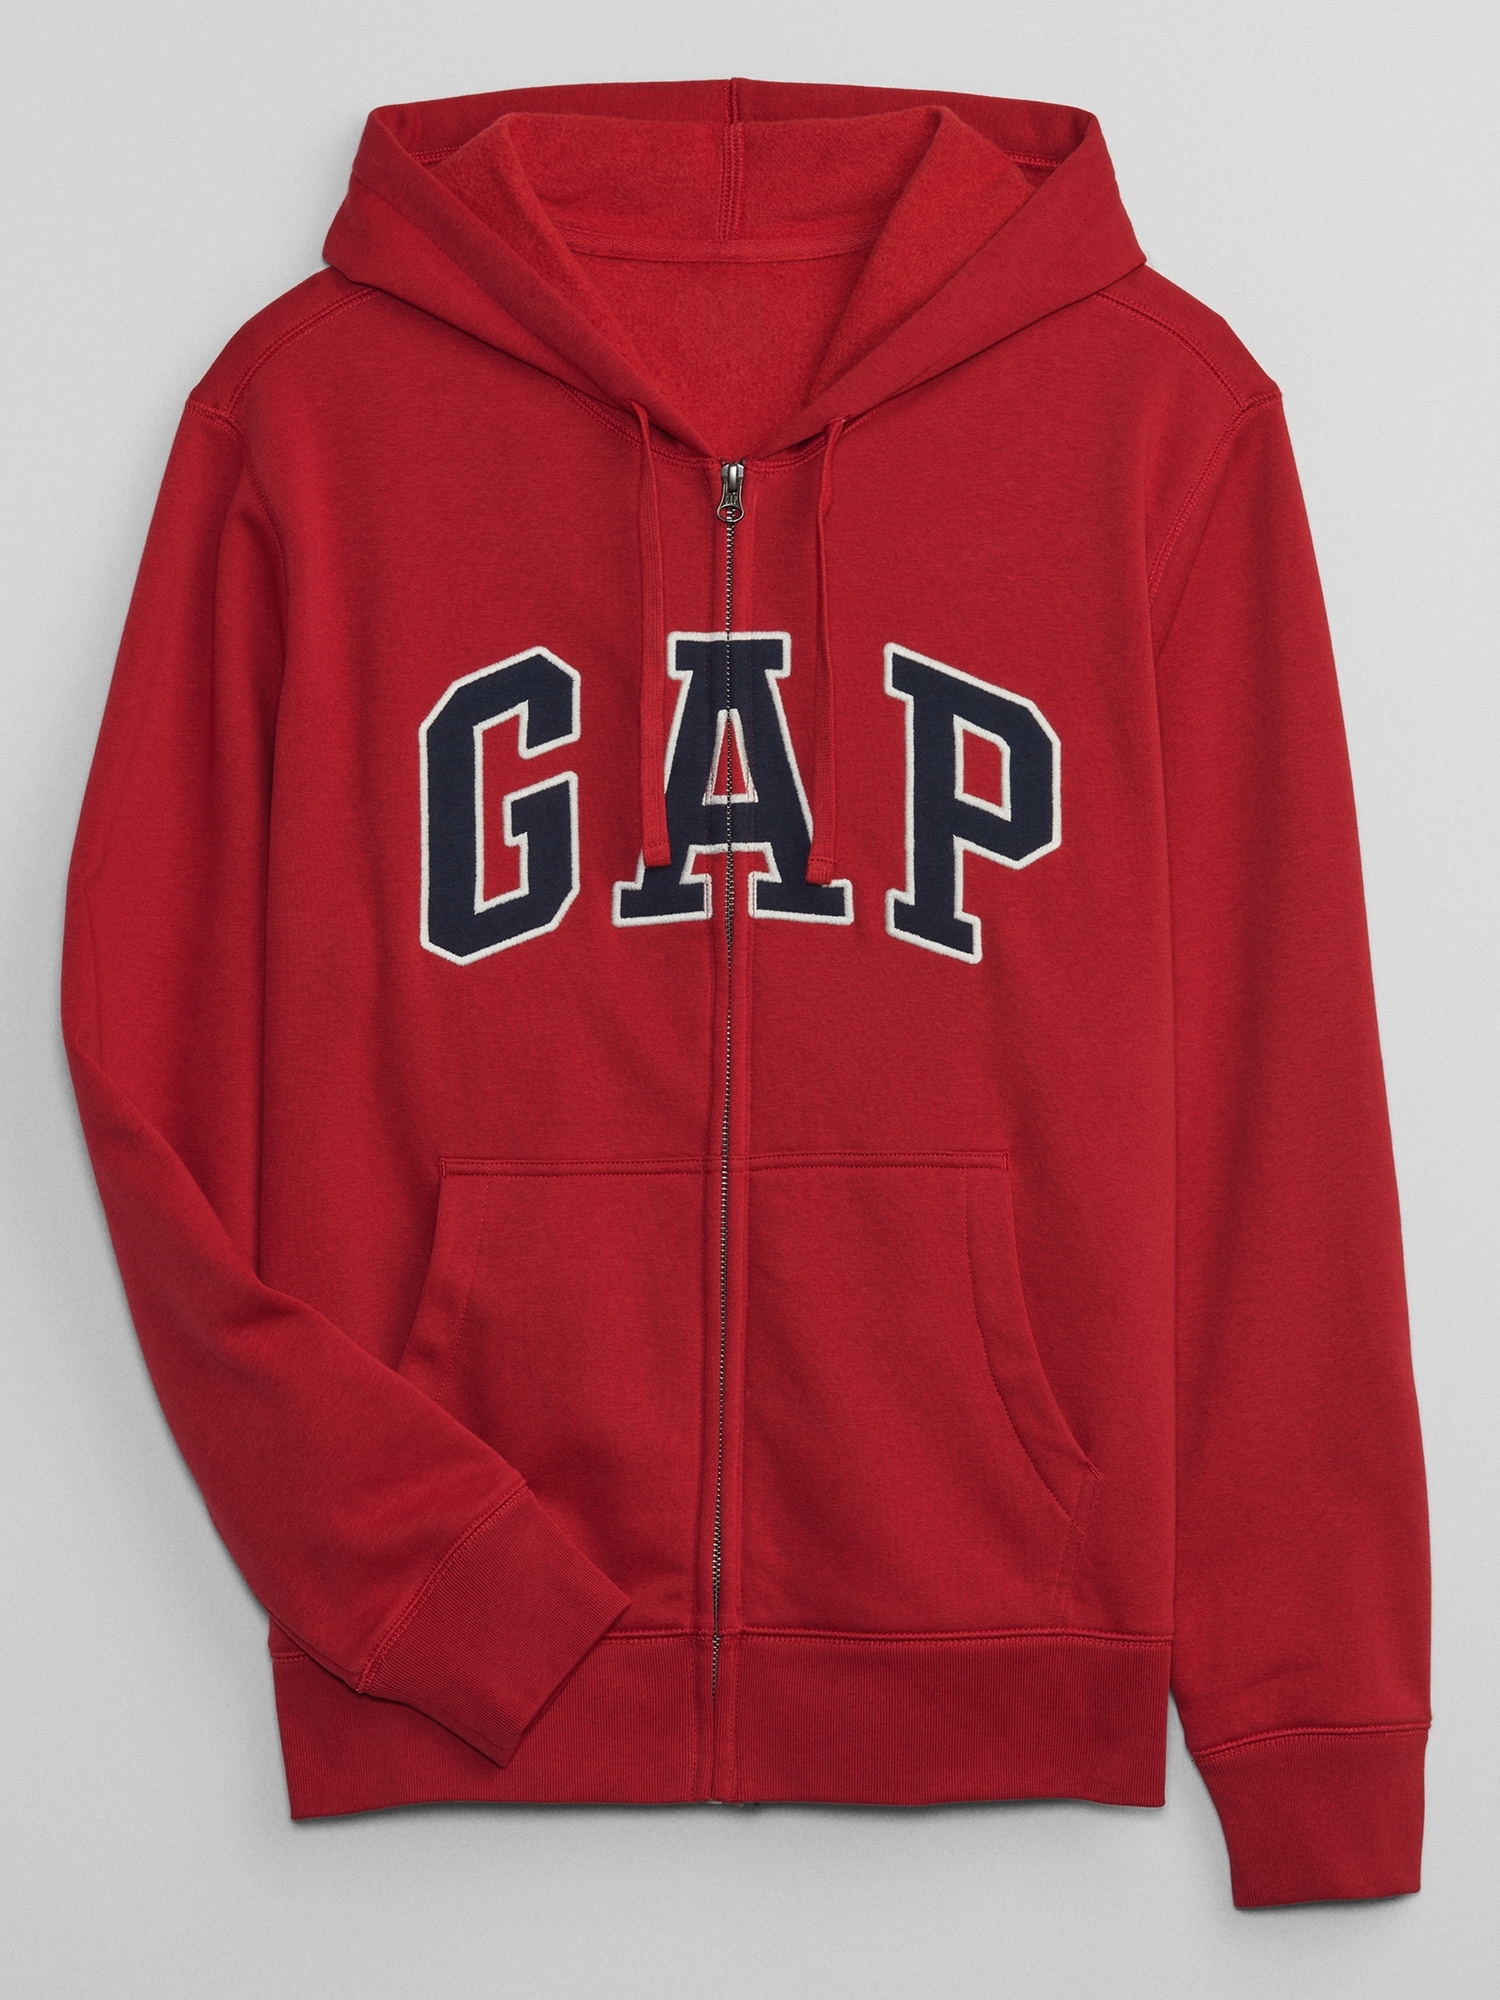 Gap Zip Hoodie | Gap